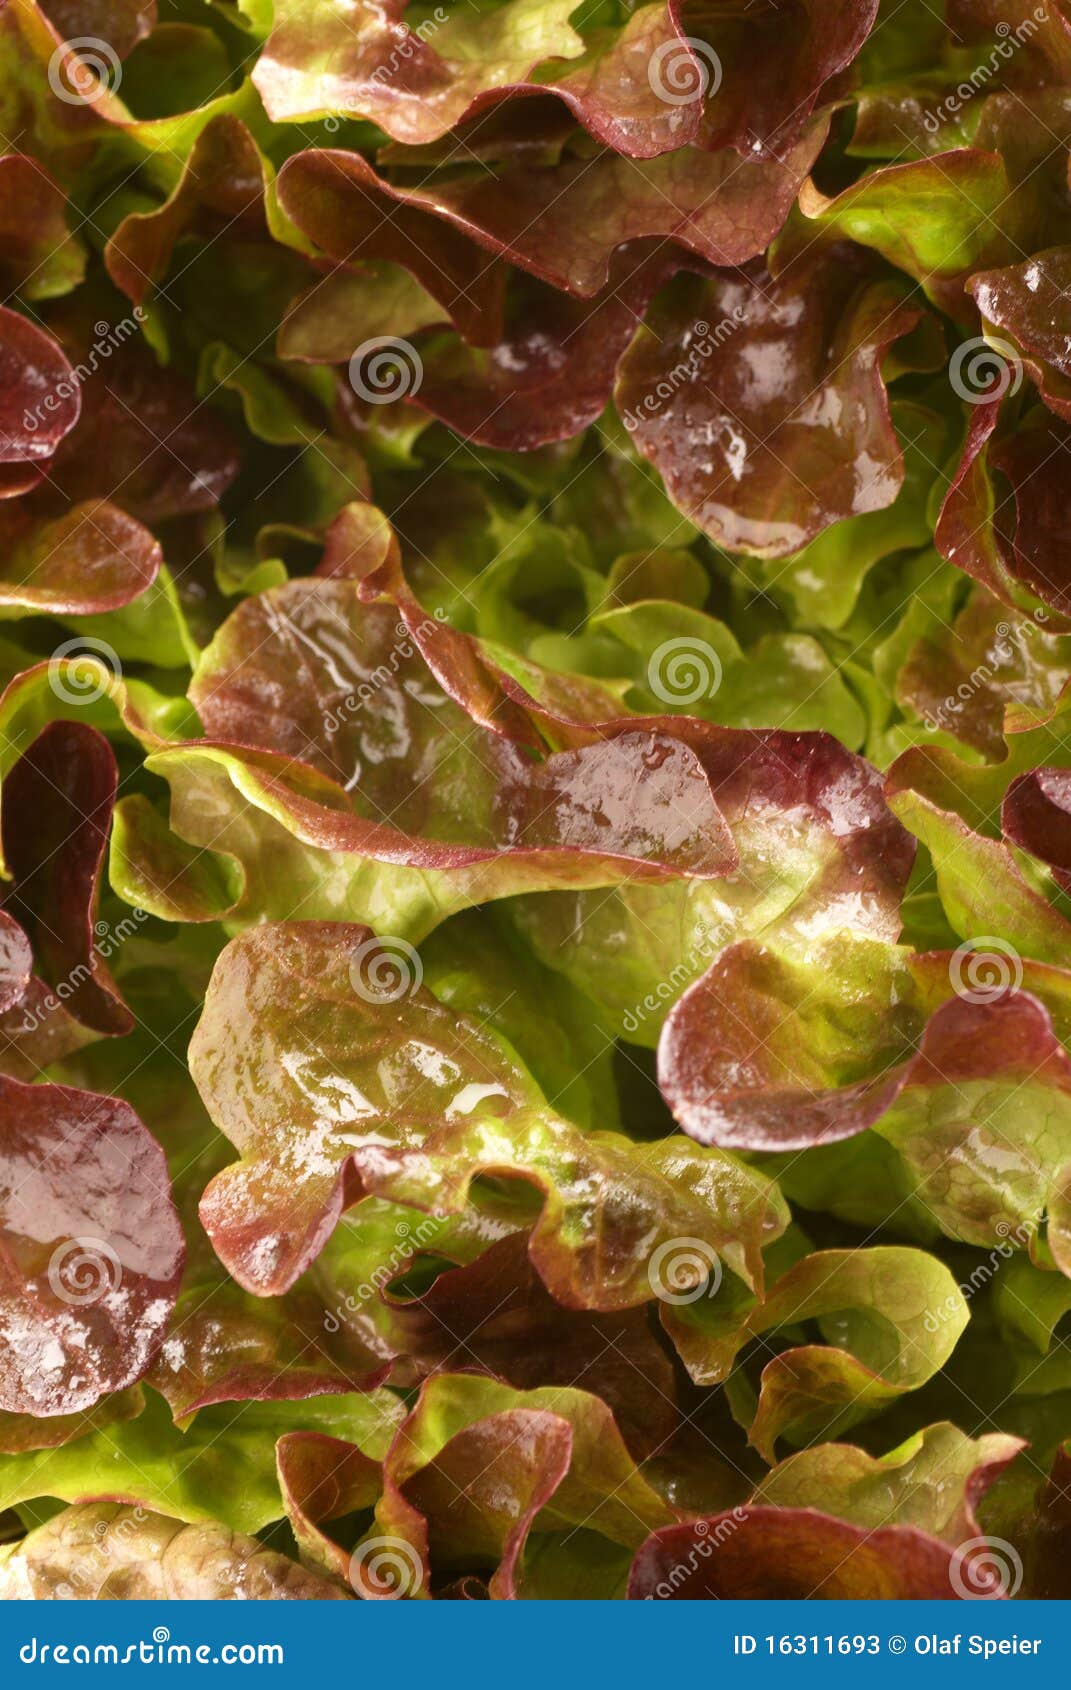 lollo rosso lettuce